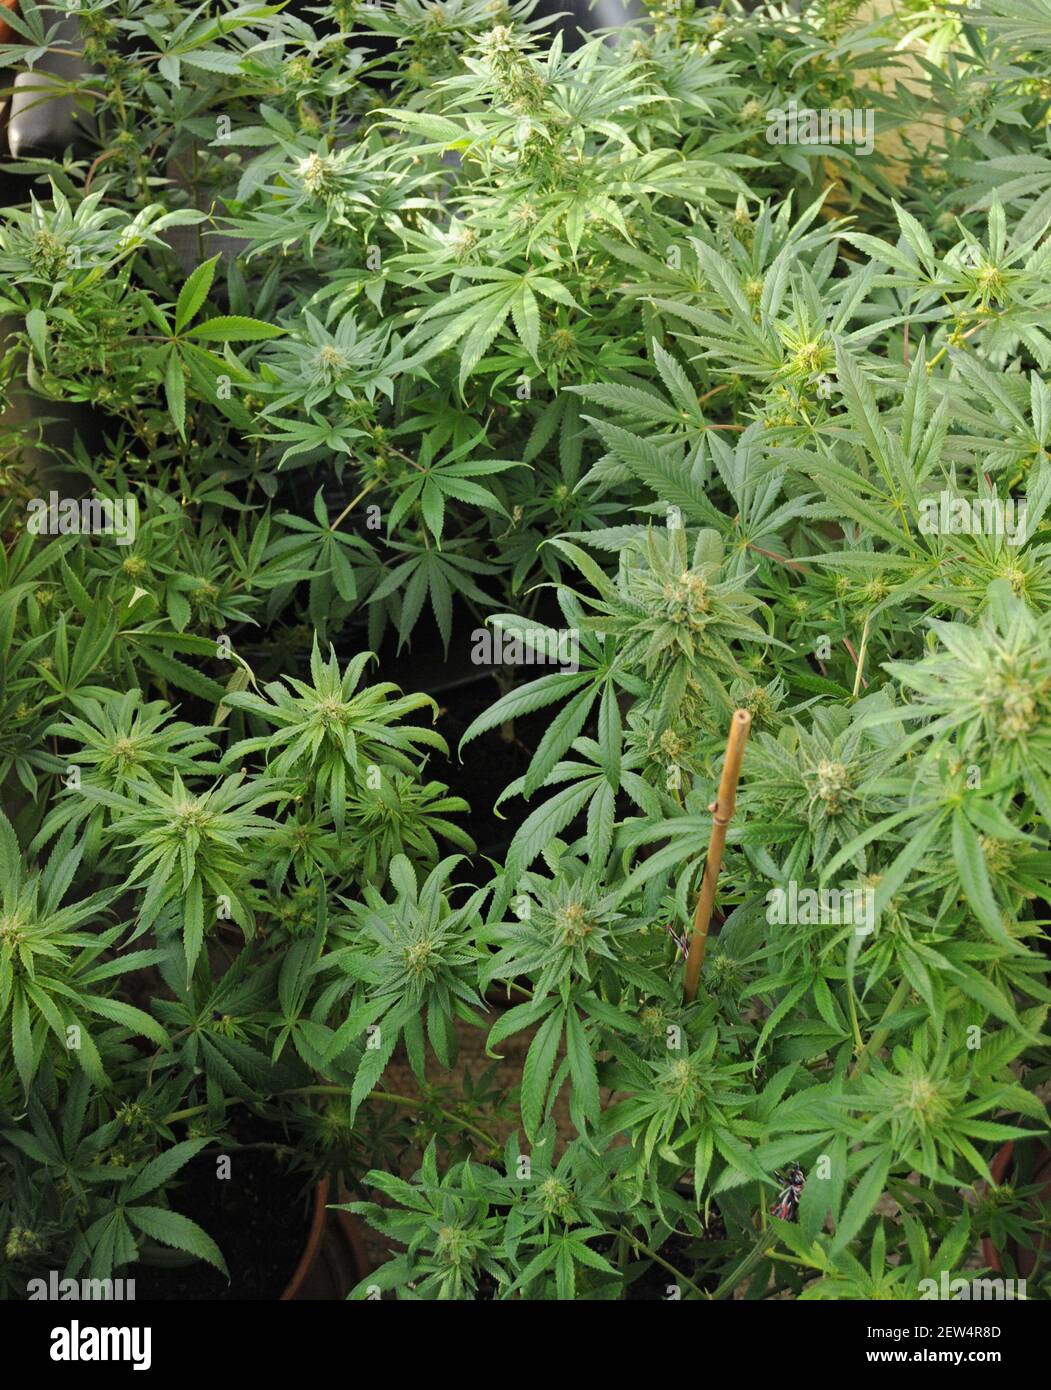 Hanfpflanzen: Cannabis mit illegalem THC (Tetrahydrocanabinol) und legalem CDB (Cannabidiol), das für die medizinische Behandlung im eigenen Land verwendet wird Stockfoto